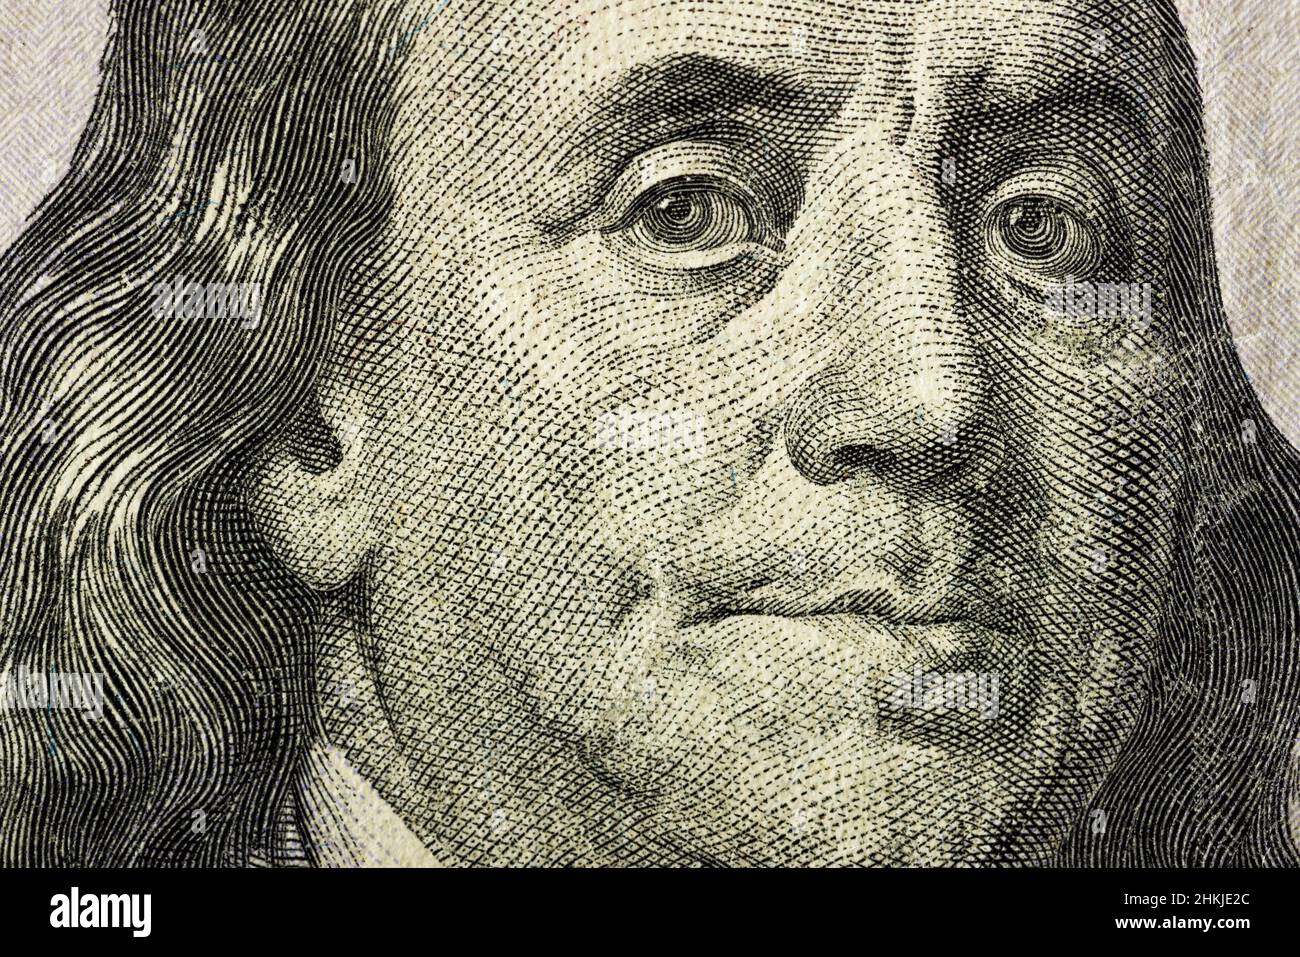 Nahaufnahme des Gesichts von Benjamin Franklin auf der 100-Dollar-Banknote. Banknote in nicht perfektem Zustand. Es gibt einige Schäden daran. Stockfoto